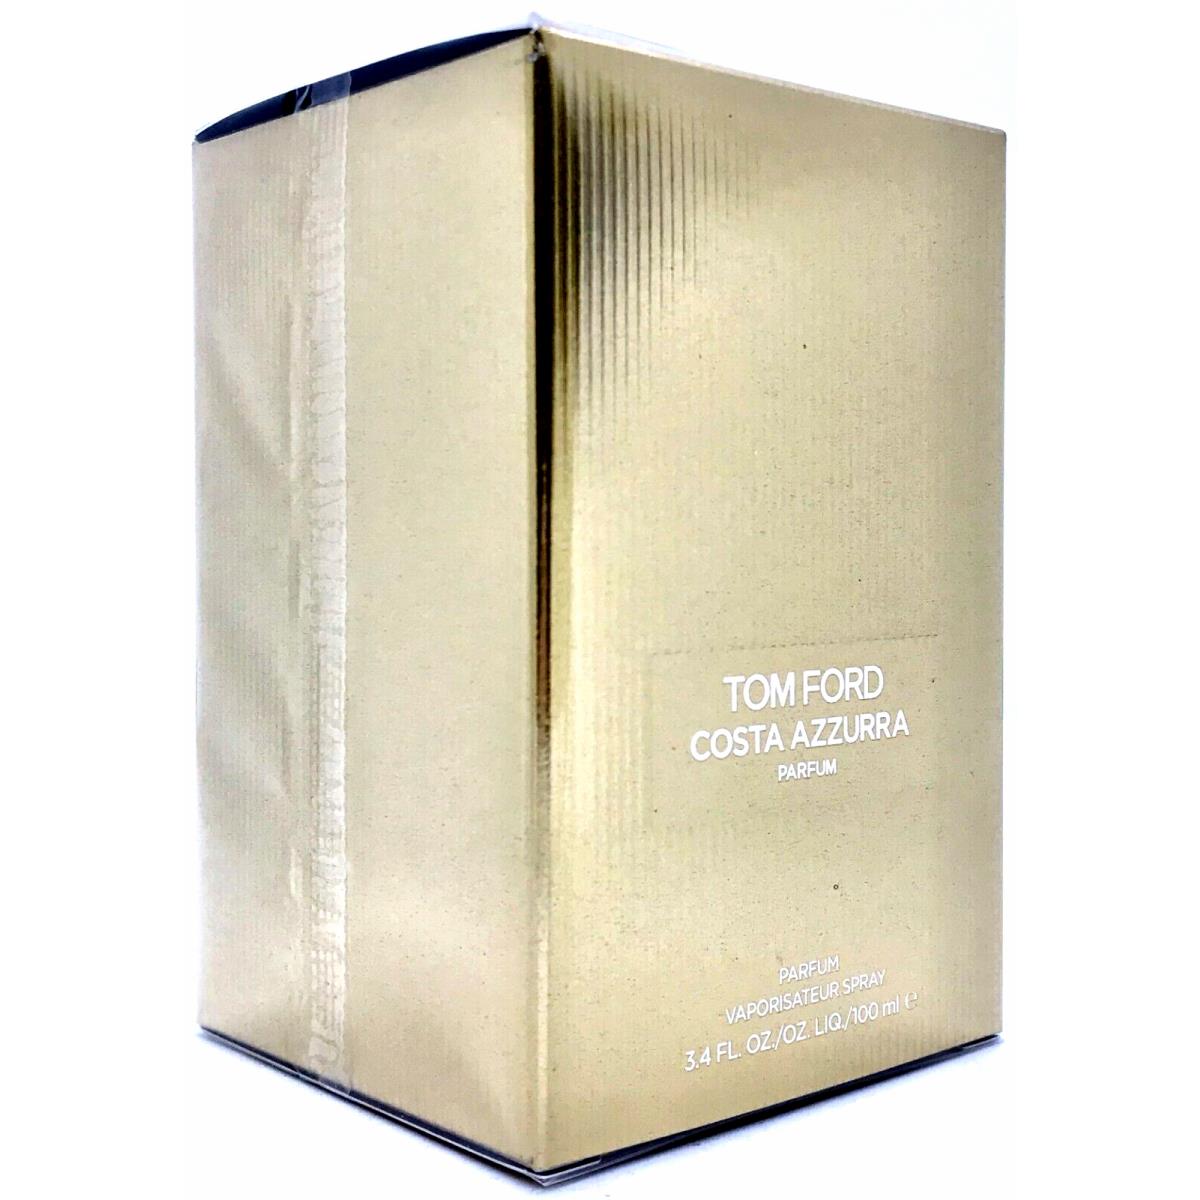 Tom Ford Costa Azzurra Parfum Spray Unisex 3.4 Oz / 100 ml Item